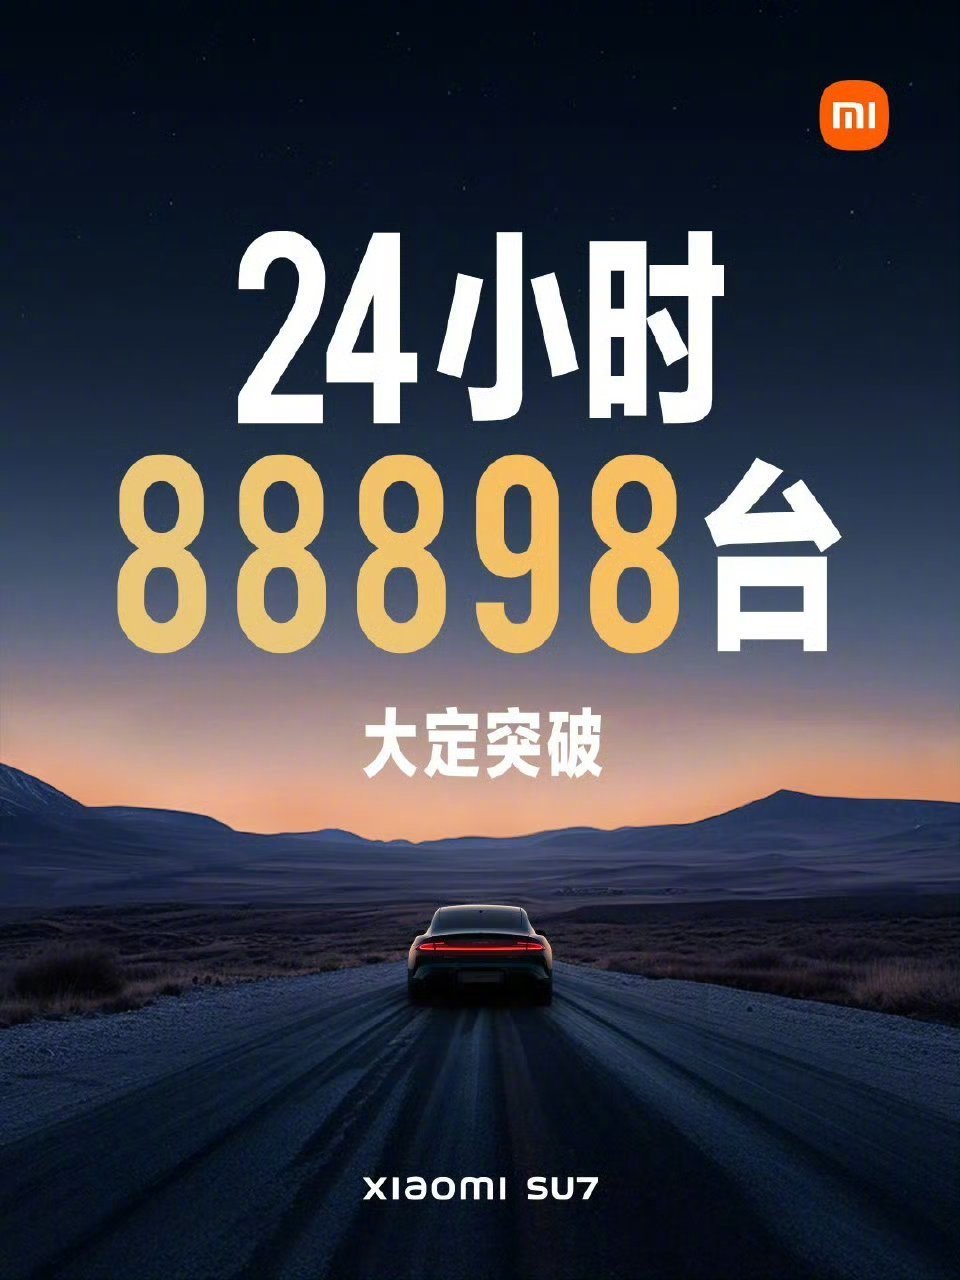 【愛車基地】熱門小米汽車24小時，88898臺絕無僅有的記錄-第0張